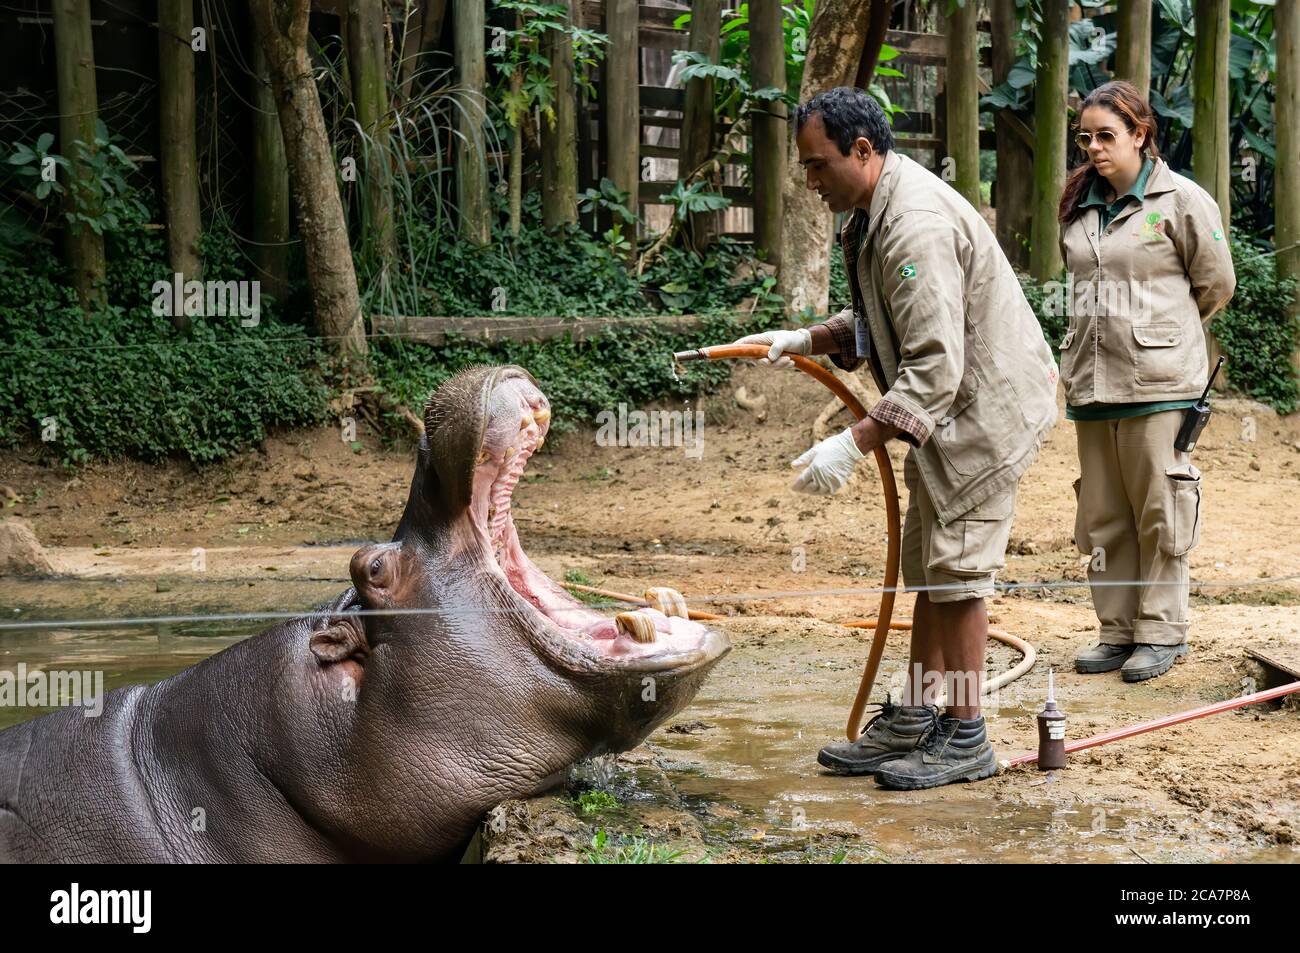 SAN PAOLO - BRASILE / 2 SETTEMBRE 2015: Un ippopotamo (Hippopotamus anfibio - grande, per lo più erbivoro, mammifero semiacquatico) che riceve cure mediche Foto Stock